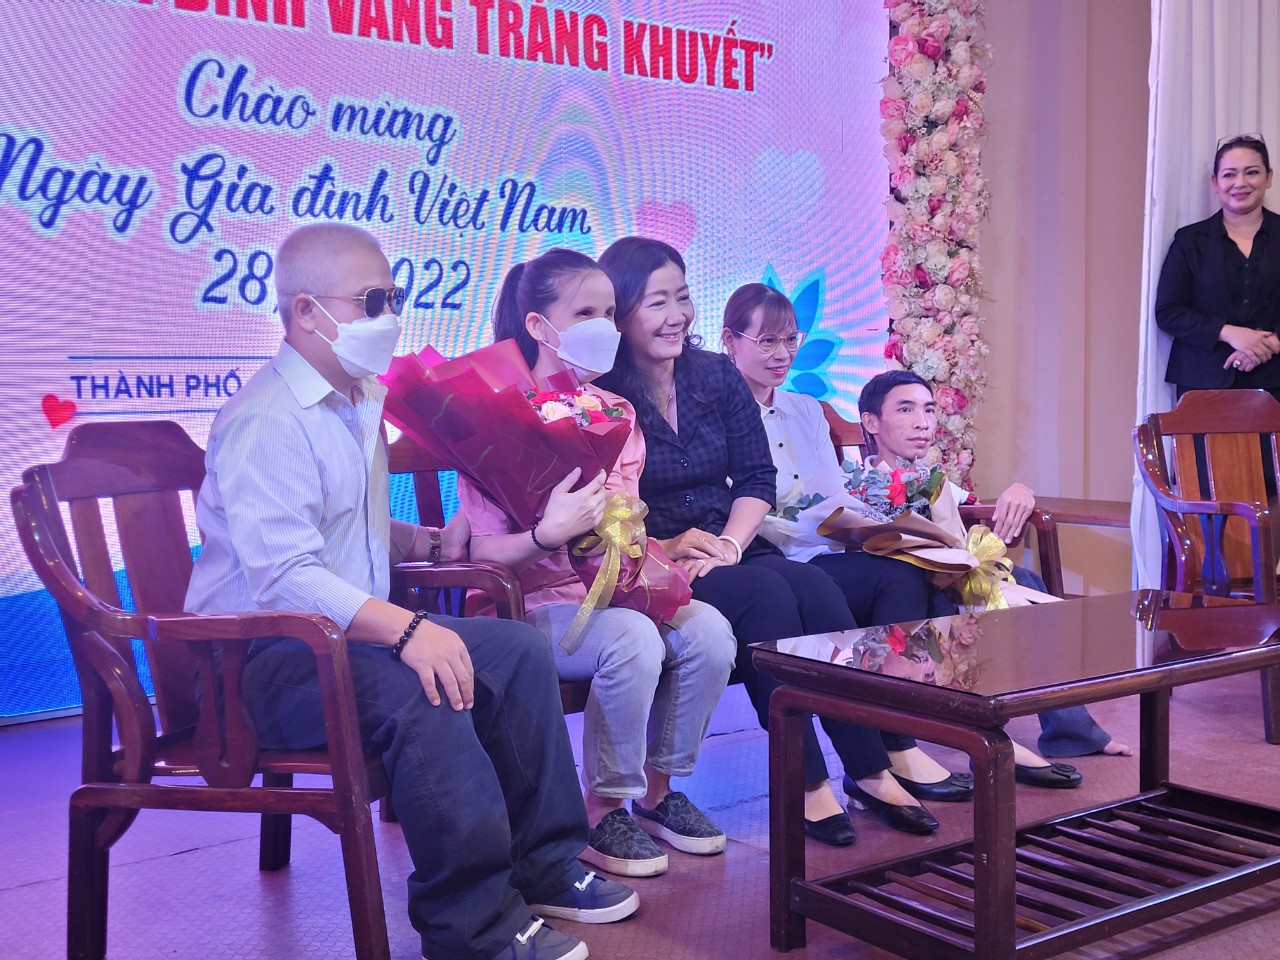 Ânh Cao Thanh Trường và chị Phan Thị Phương Dung (bìa trái) chia sẻ tại buổi giao lưu chương trình Hạnh phúc gia đình vầng trăng khuyết